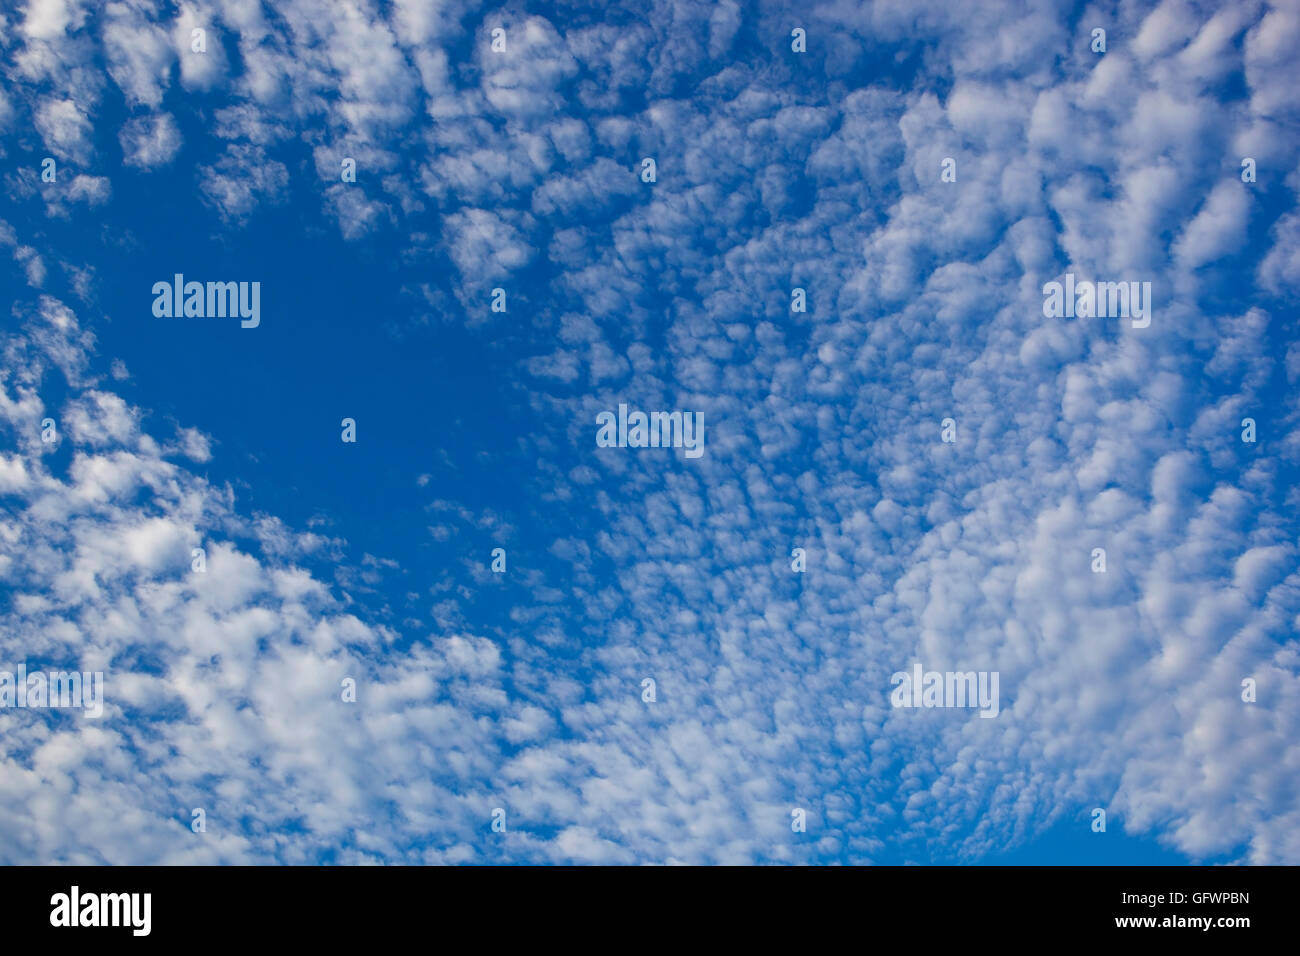 Natürliche abstrakten Muster weiße Wolken am blauen Himmelshintergrund. Stockfoto